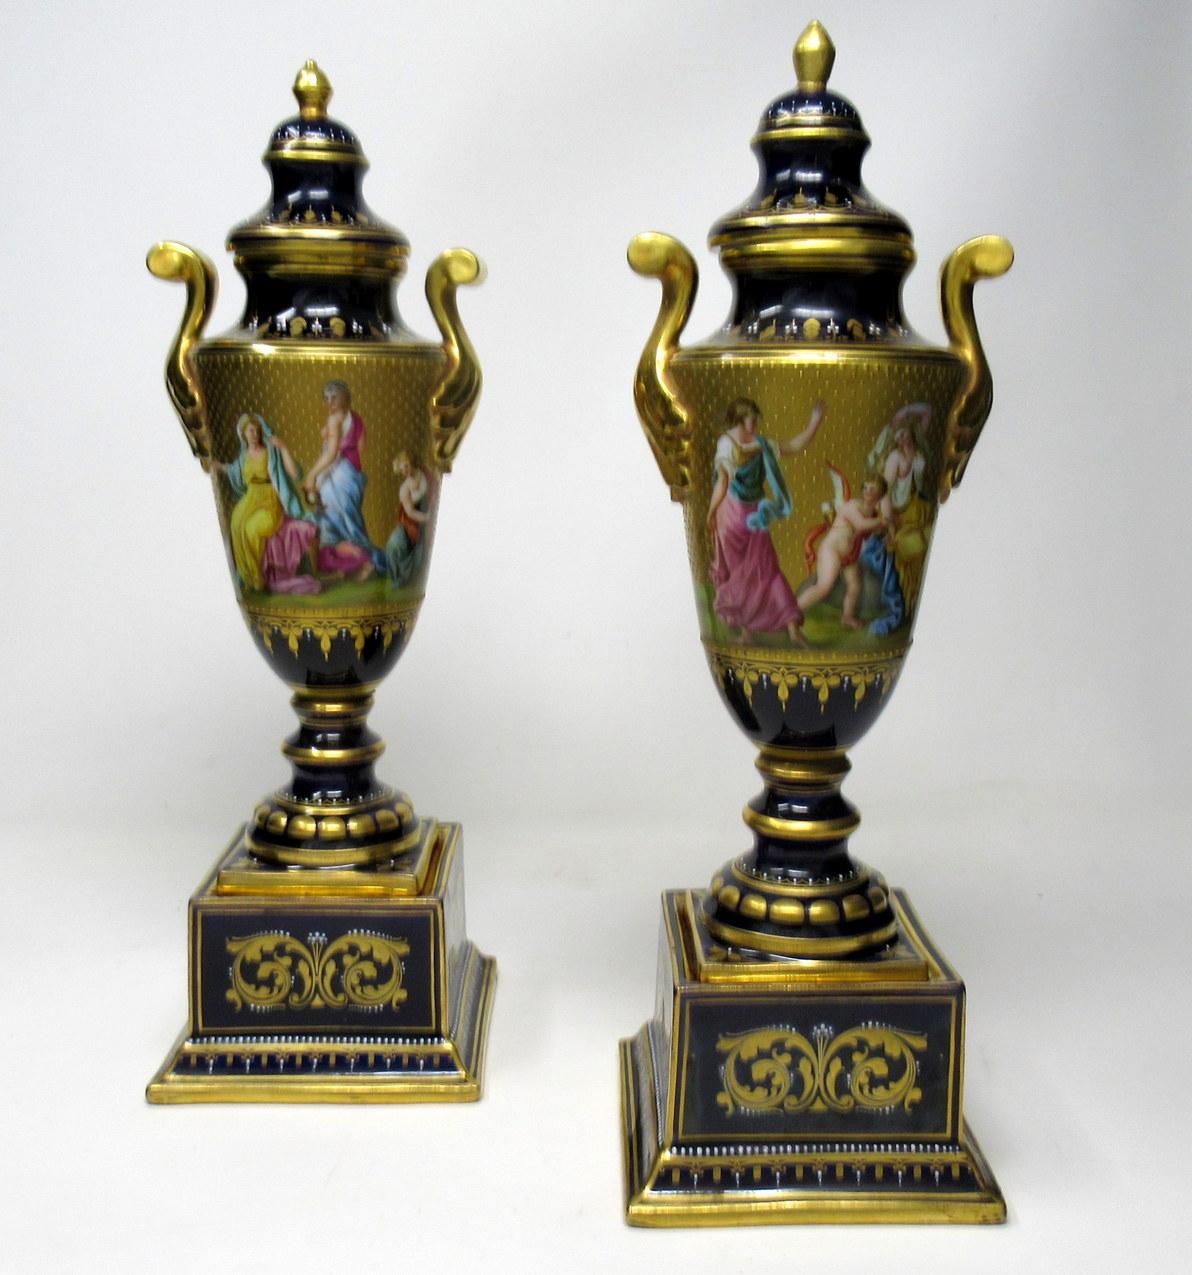 Ein außergewöhnlich feines Paar österreichischer Royal-Wien-Urnen von hervorragender Qualität, letzte Hälfte des 19. Jahrhunderts.

Der umlaufende Fries ist mit sehr detaillierten Verzierungen auf Goldgrund versehen, die mythologische Szenen